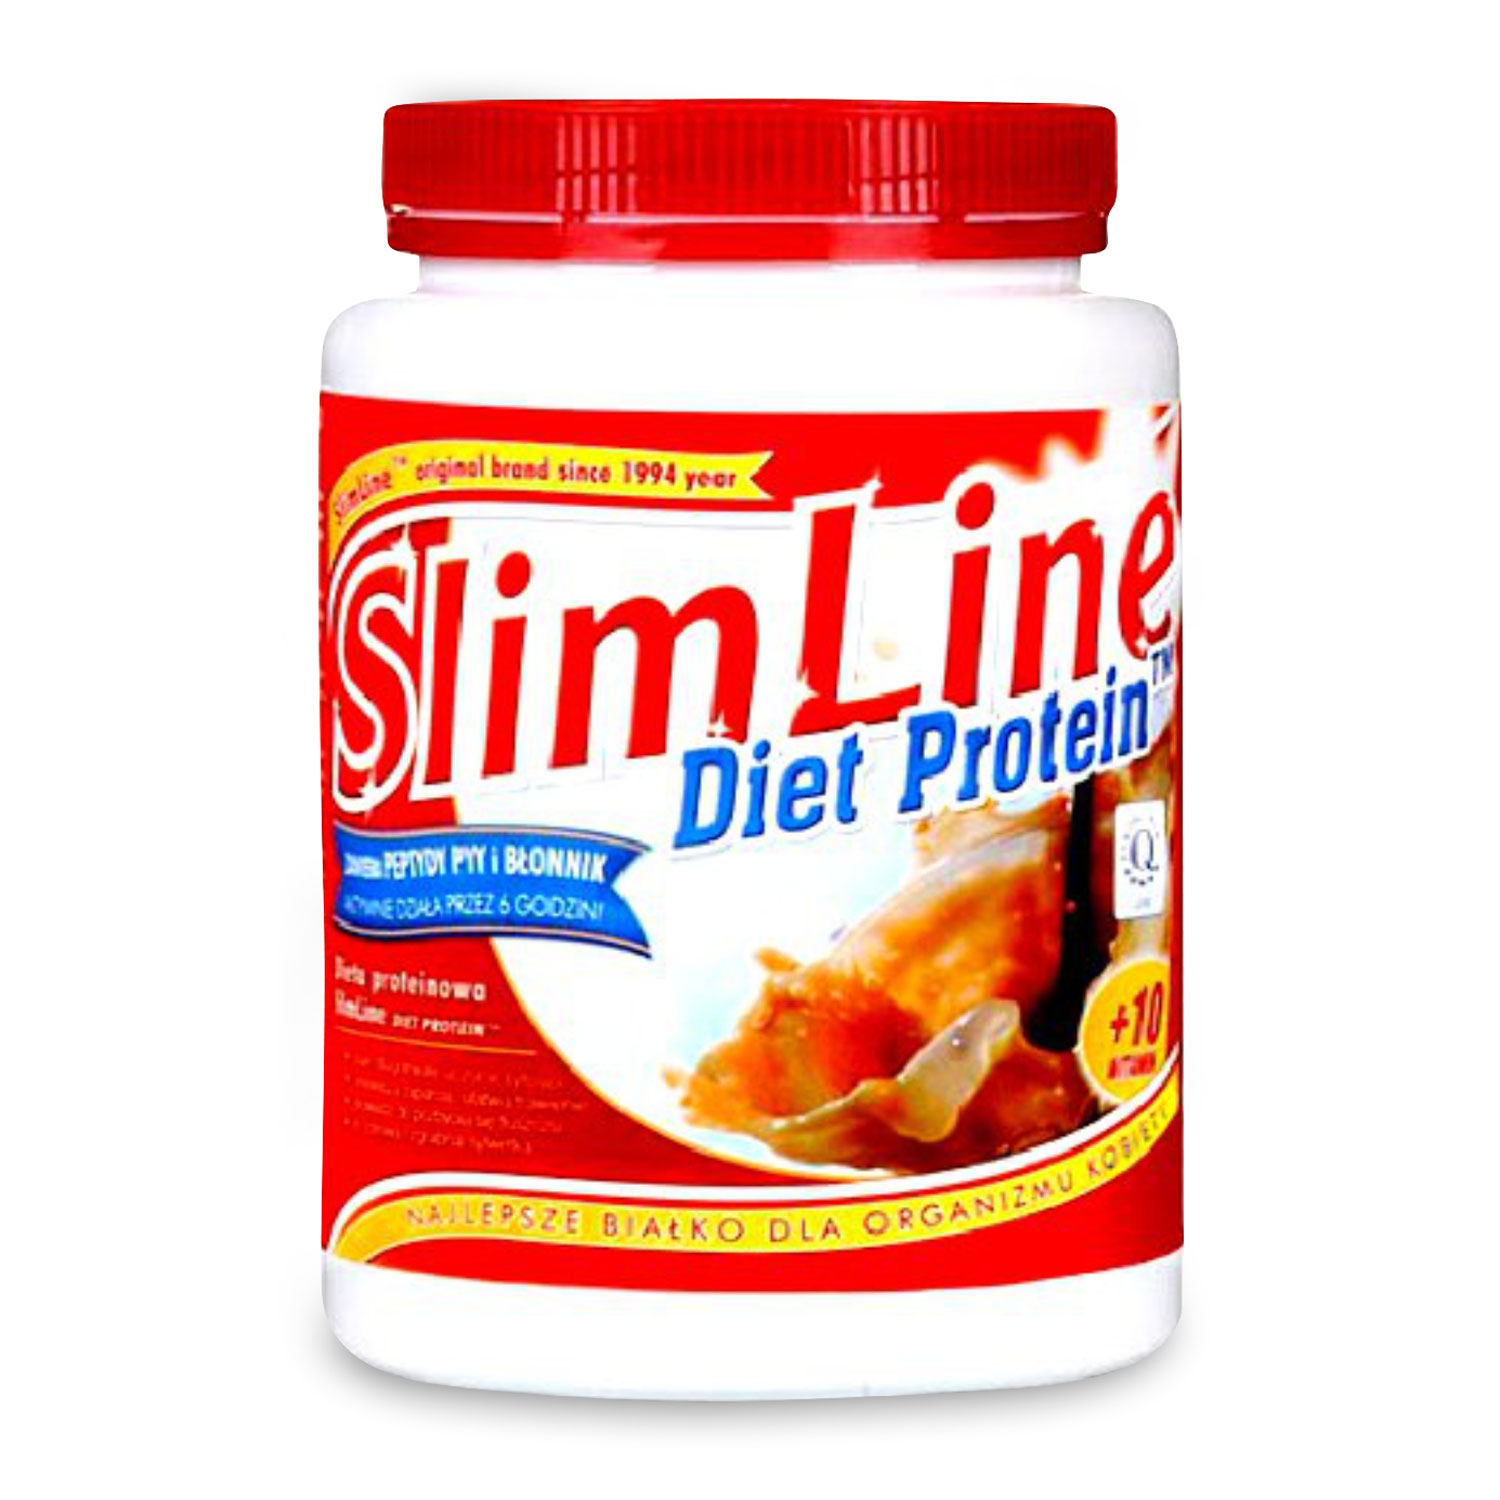 Proteine pentru slabit Megabol Diet Protein Slim Line, vitamine si fibre proteice cu digestie lenta